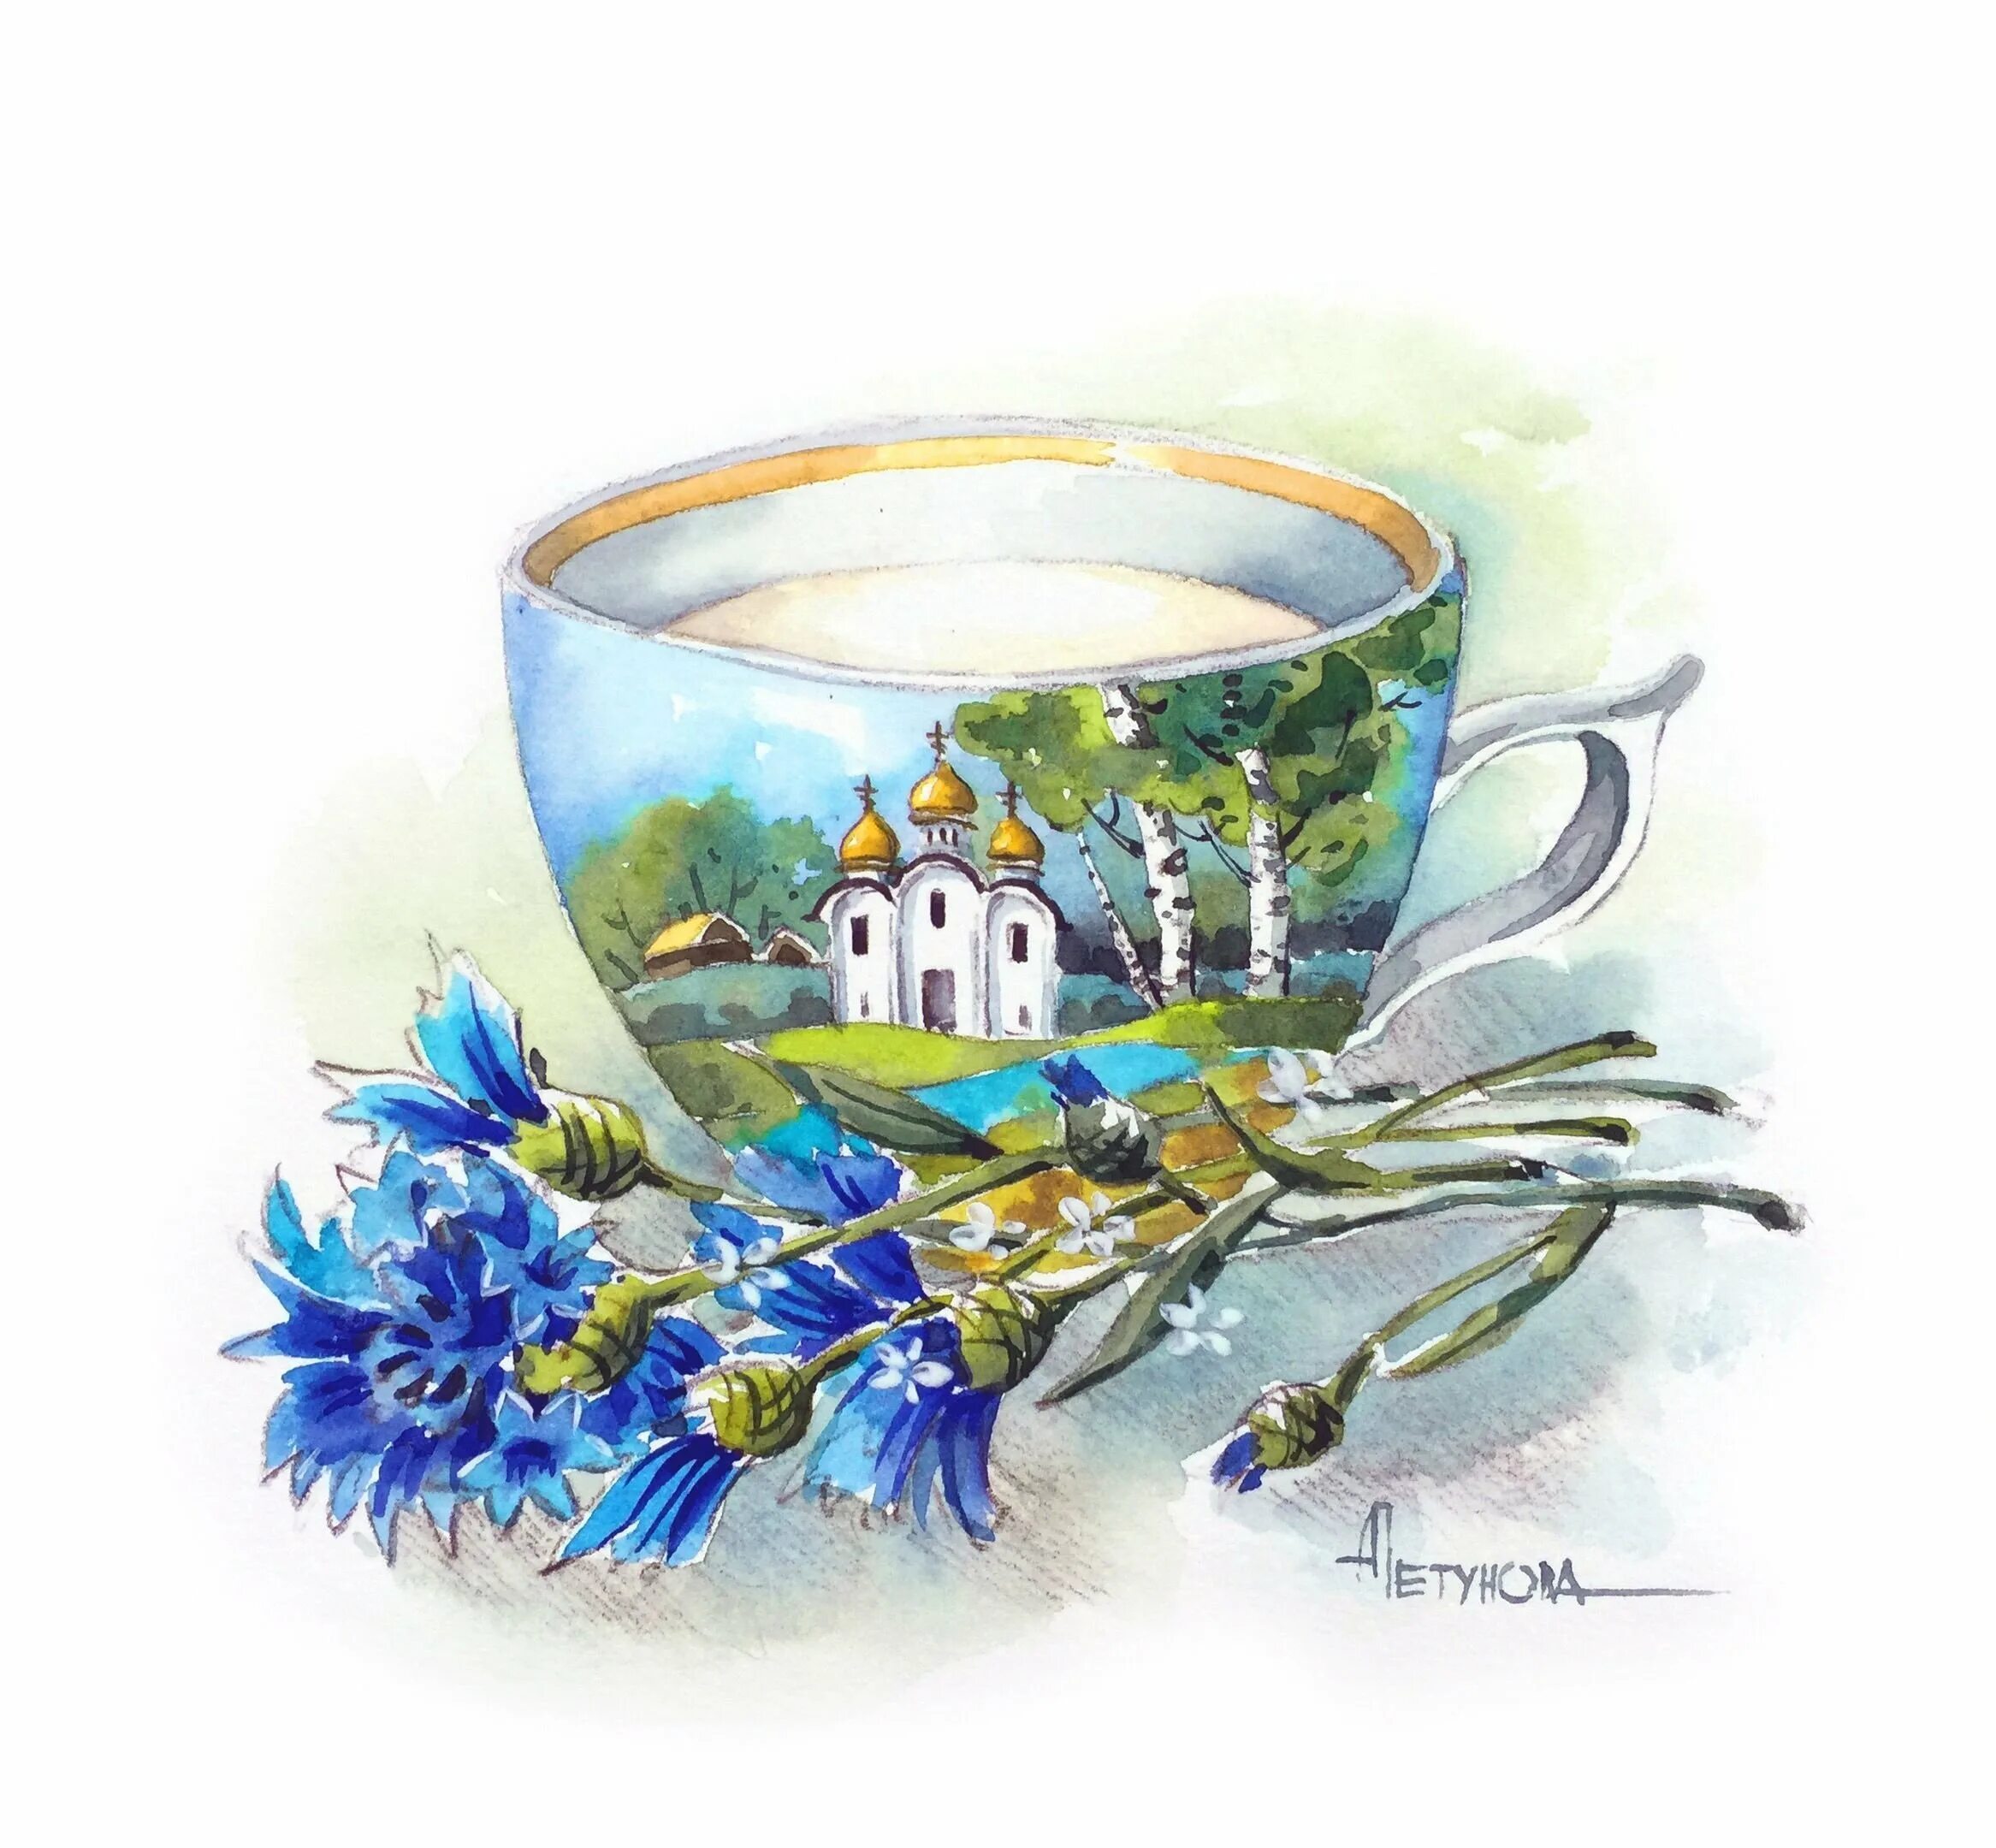 Громадная голубая чаша. Иллюстрации Анны Петуновой.